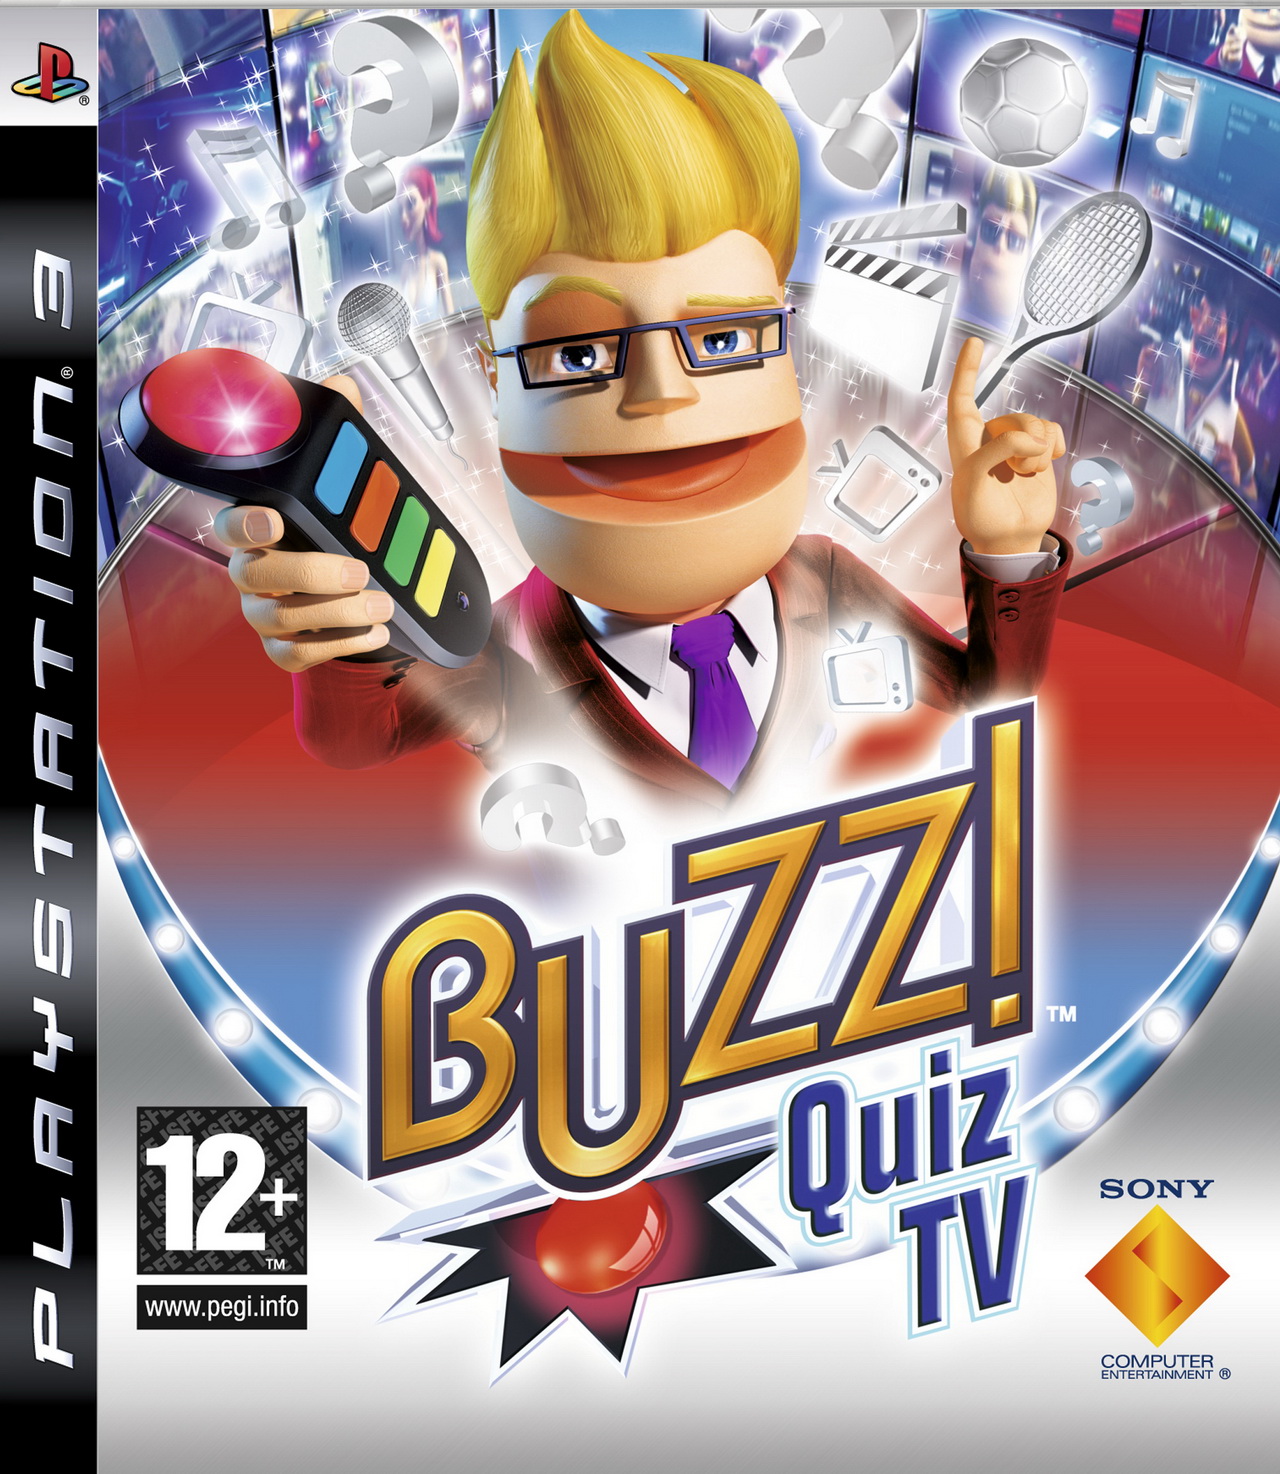 Buzz ! Quiz TV